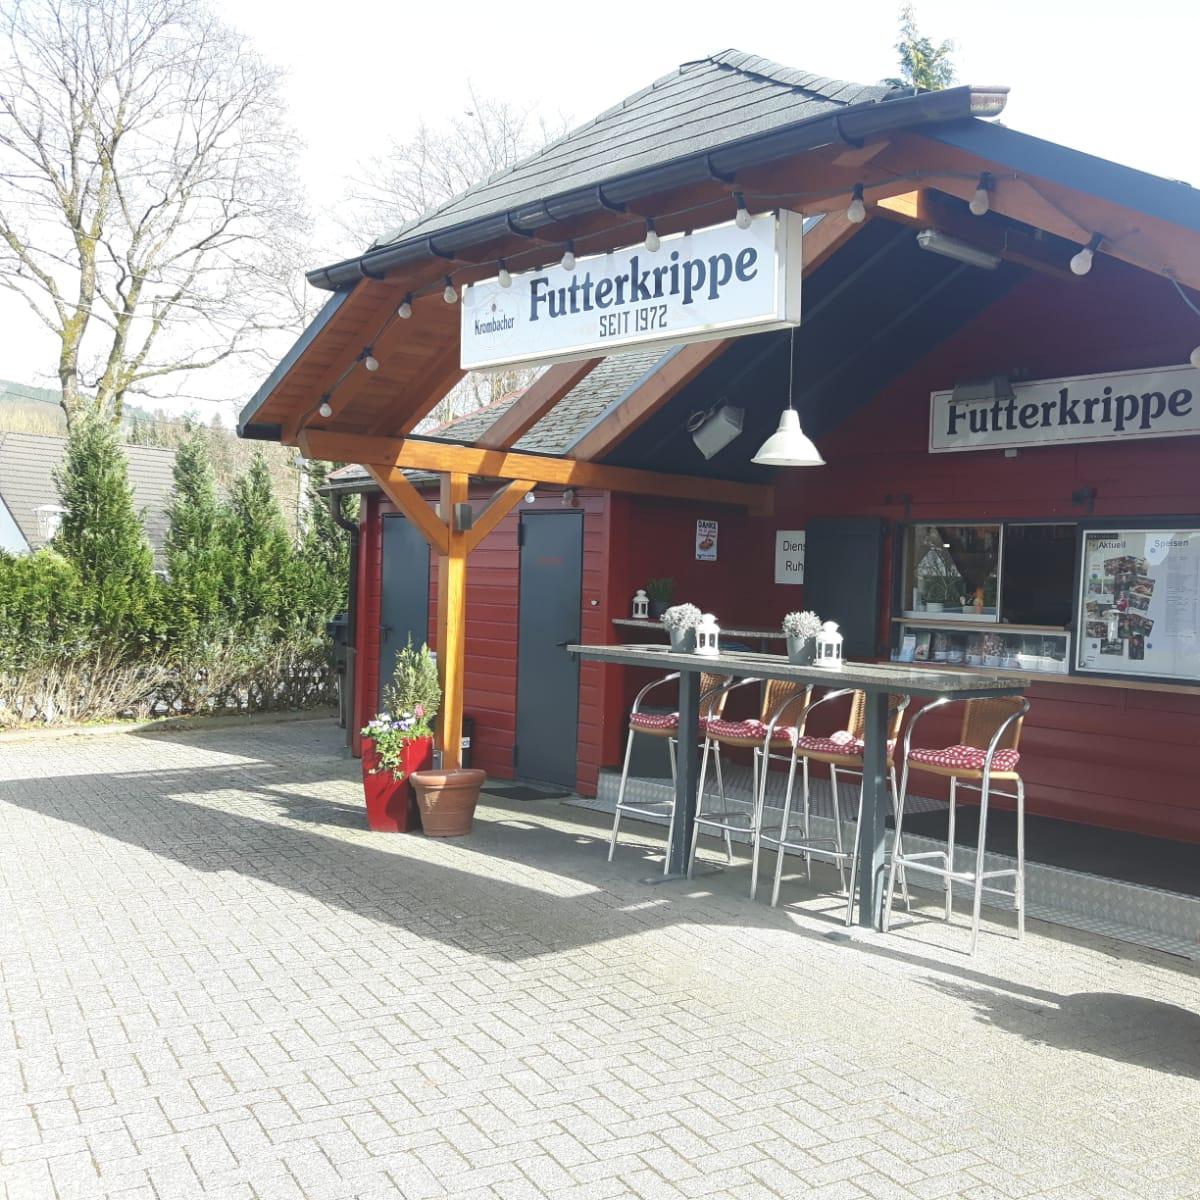 Restaurant "Futterkrippe Eichen" in Kreuztal